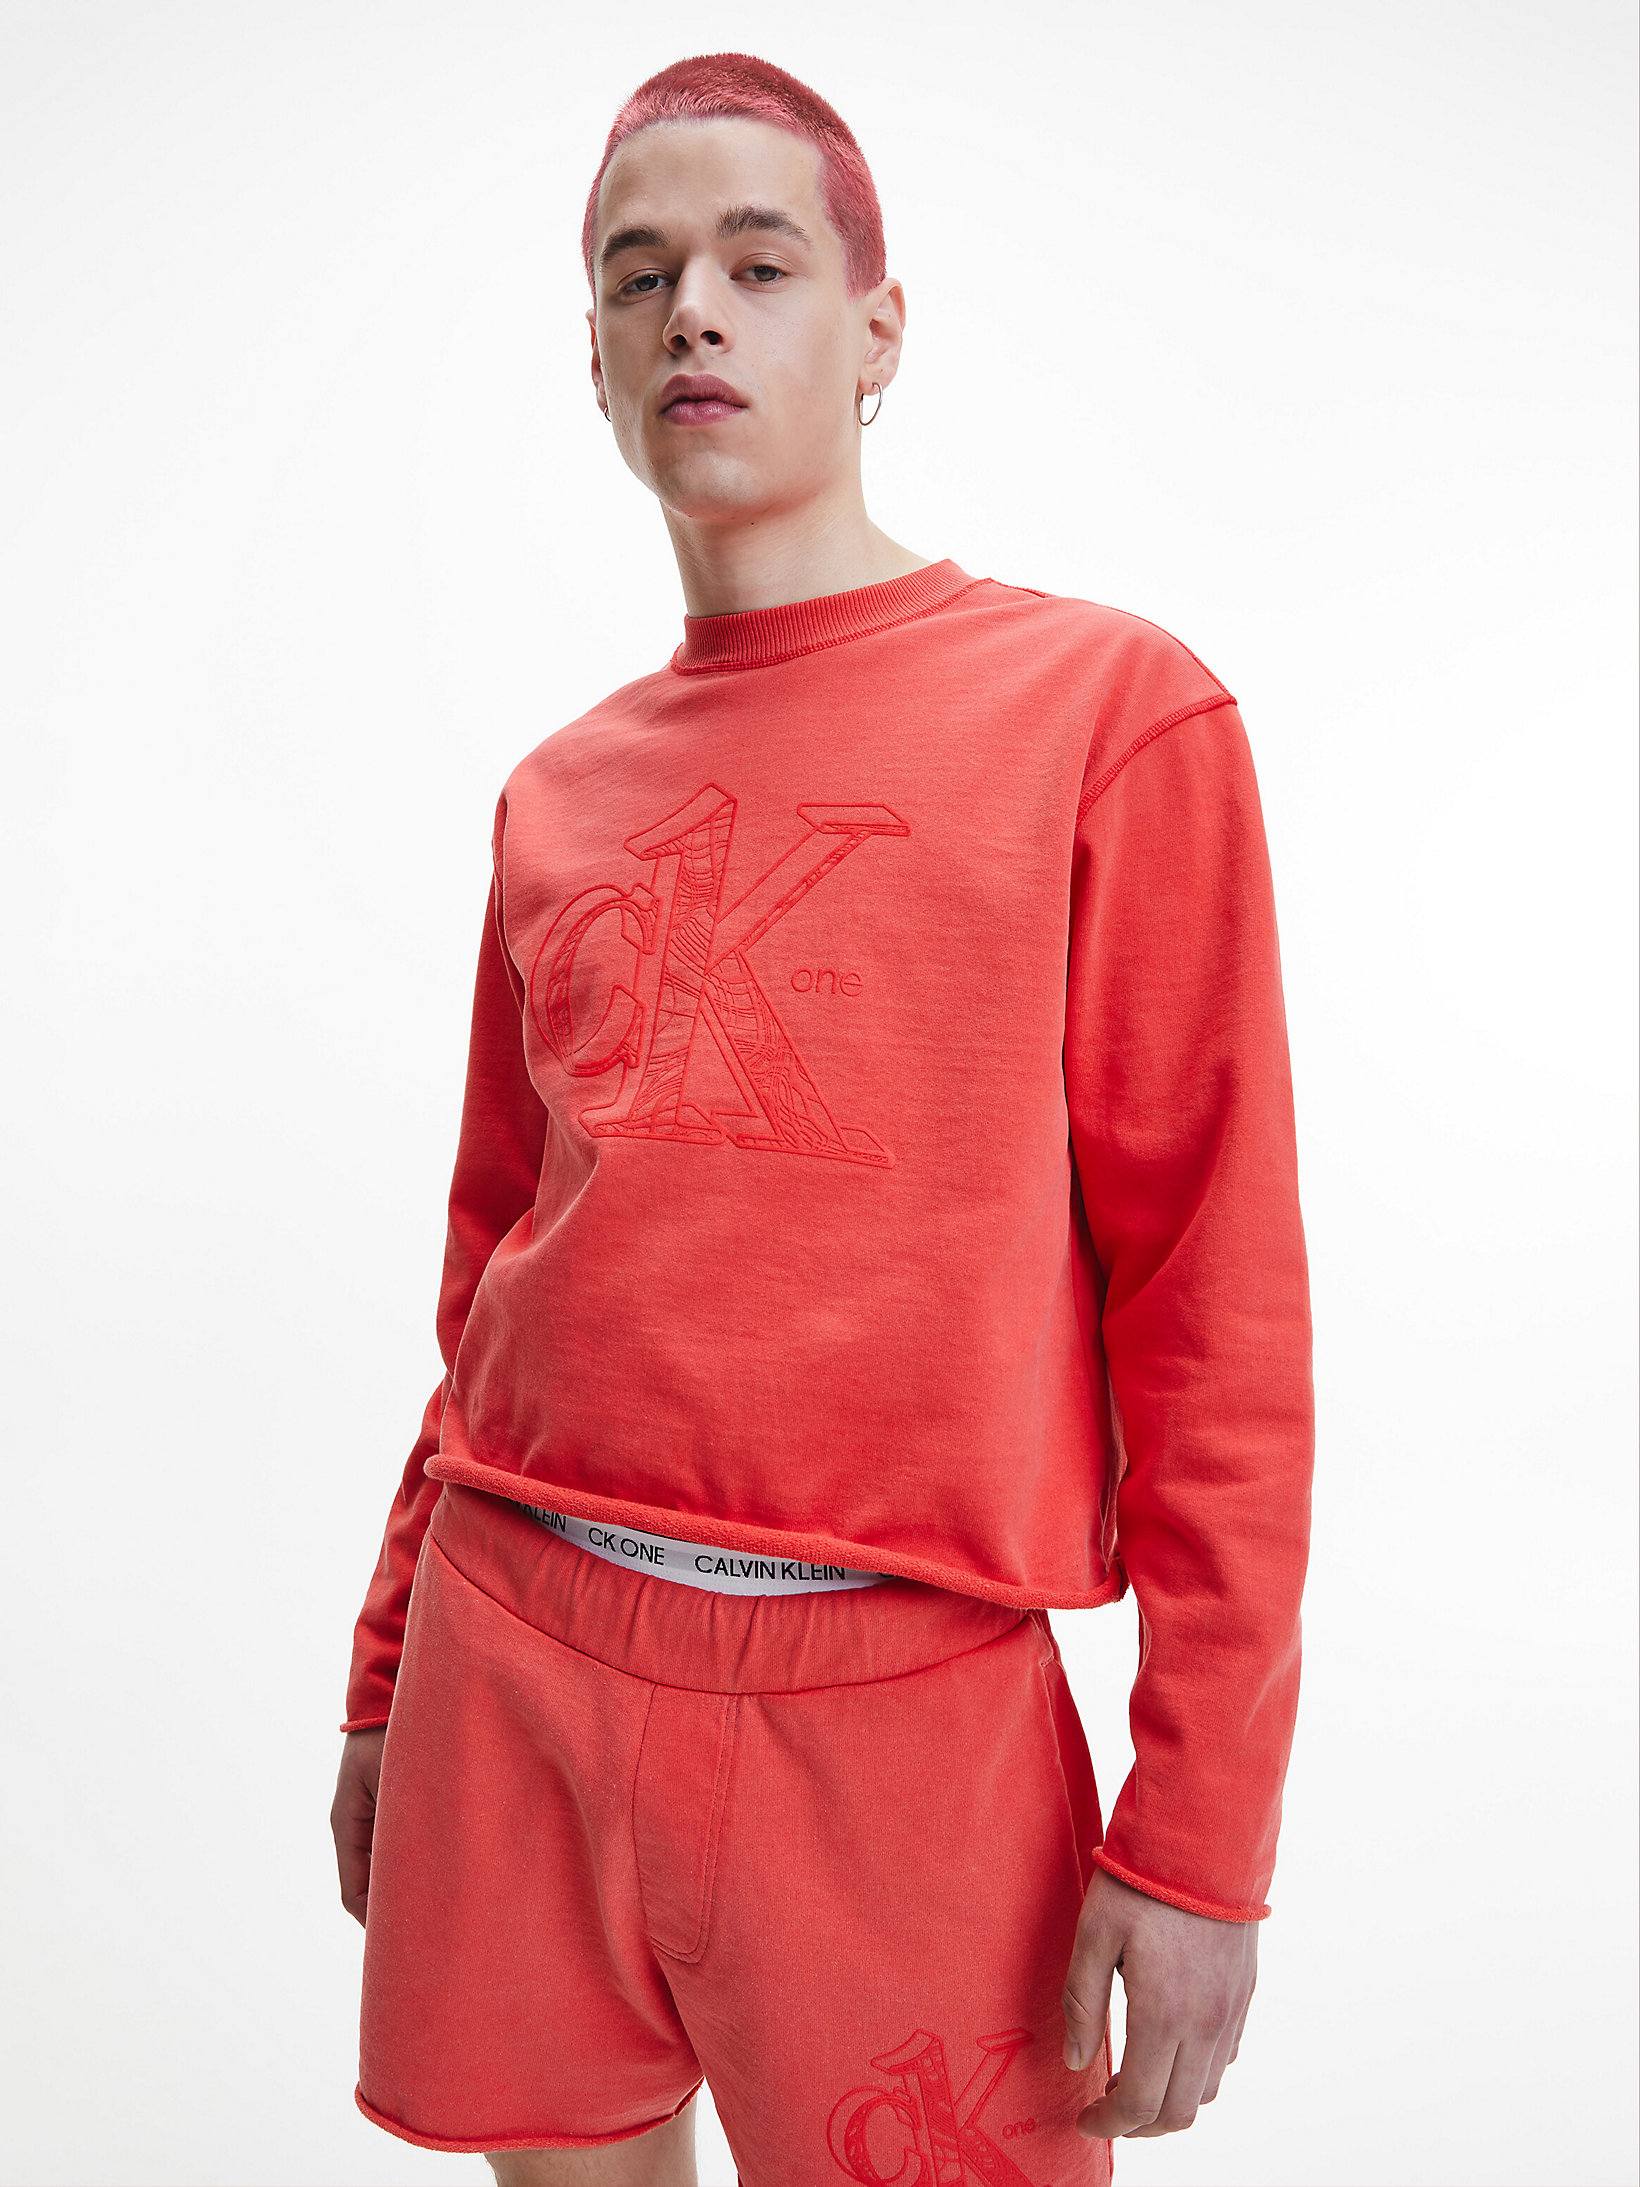 Fierce Red Unisex Recycled Cotton Sweatshirt - CK One undefined unisex Calvin Klein